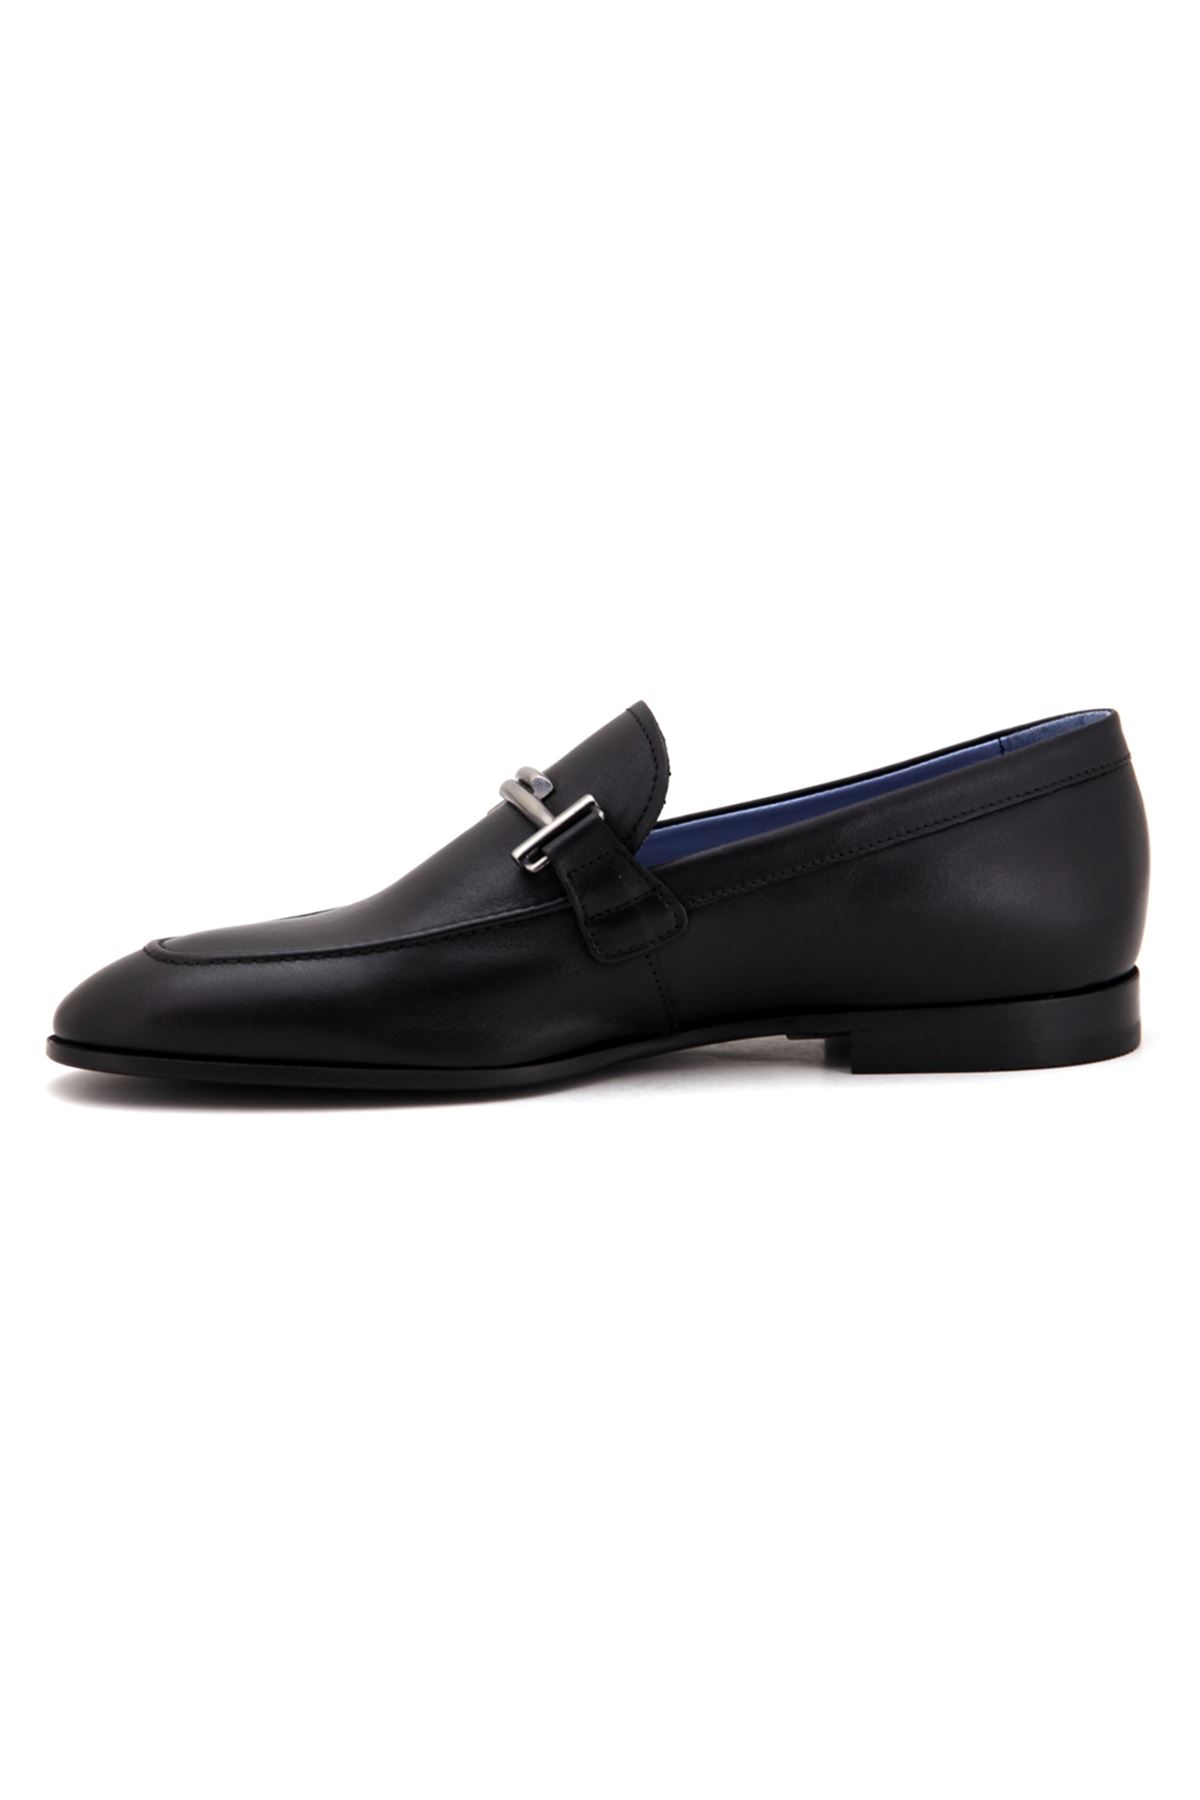 3270 Libero Klasik Erkek Ayakkabı - Siyah